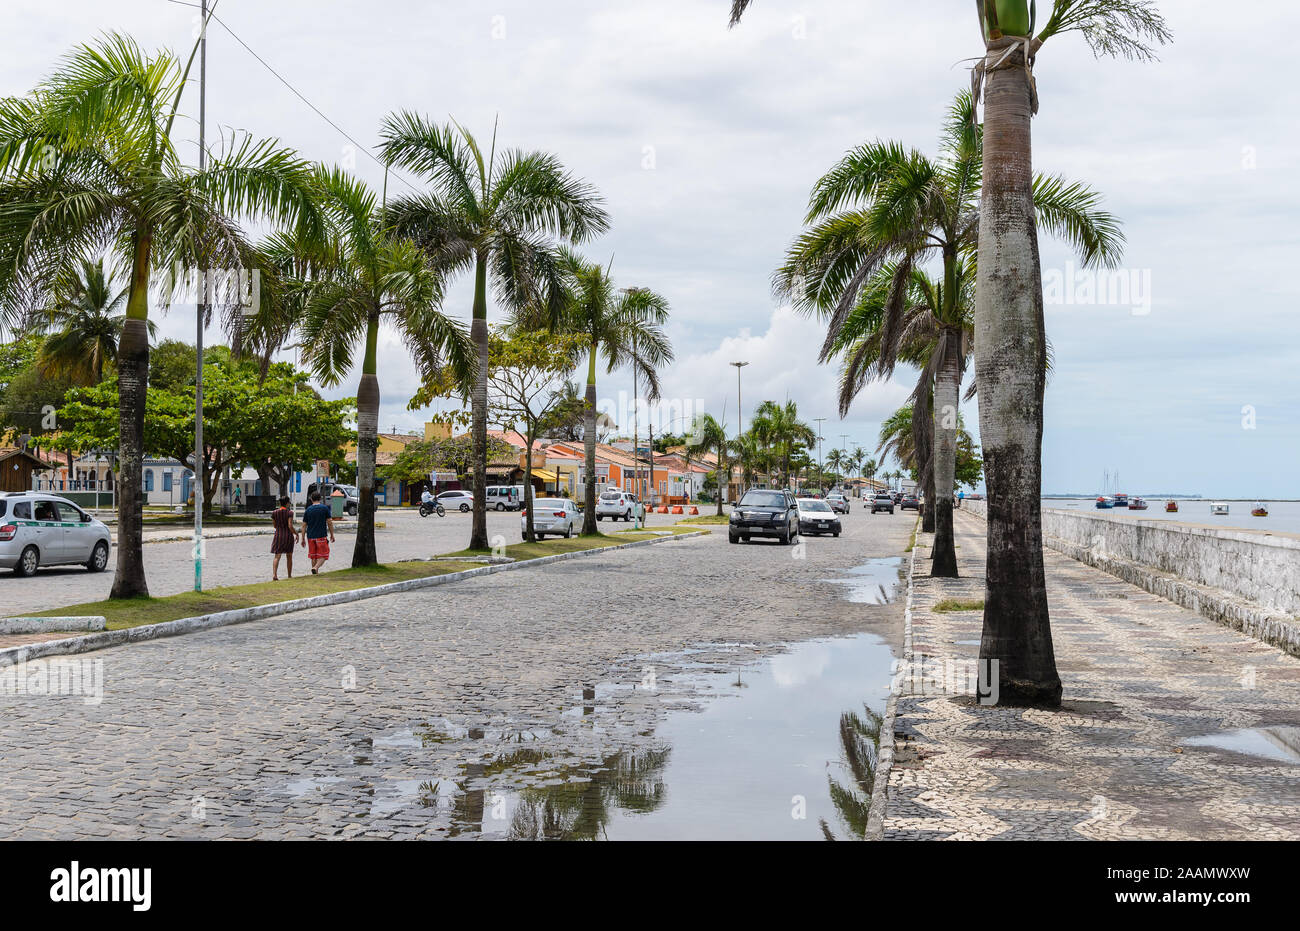 Palmen säumen die Straße, der Hafenstadt Porto Seguro, Bahia, Brasilien, Südamerika. Stockfoto